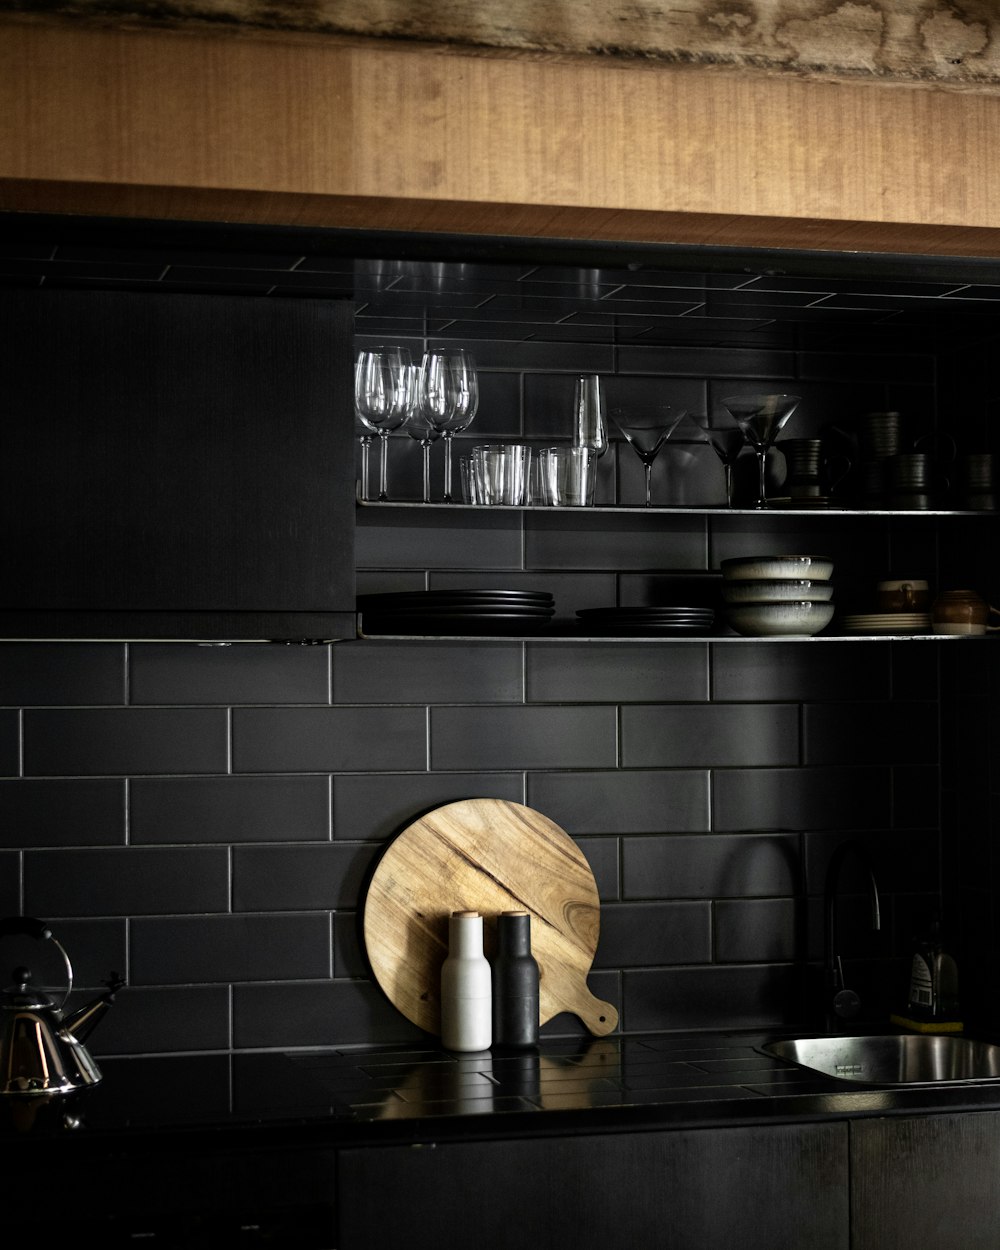 カウンターに木製のまな板がある黒いキッチン